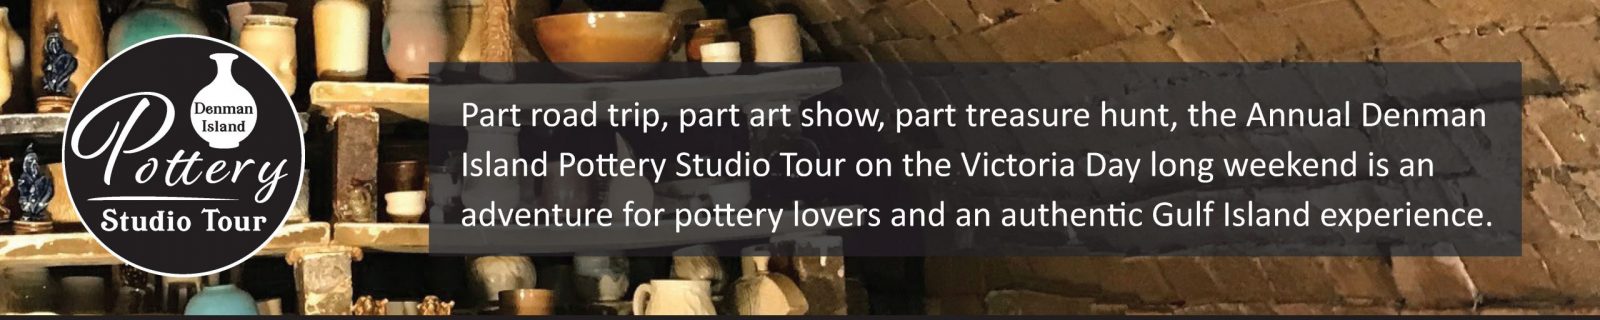 Denman Island Pottery Studio Tour